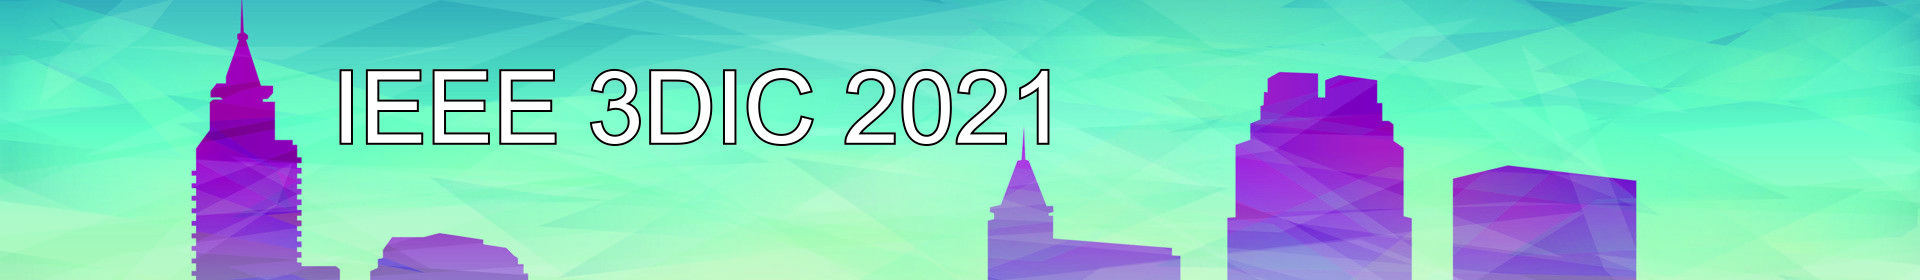 IEEE 3DIC 2021 Event Banner